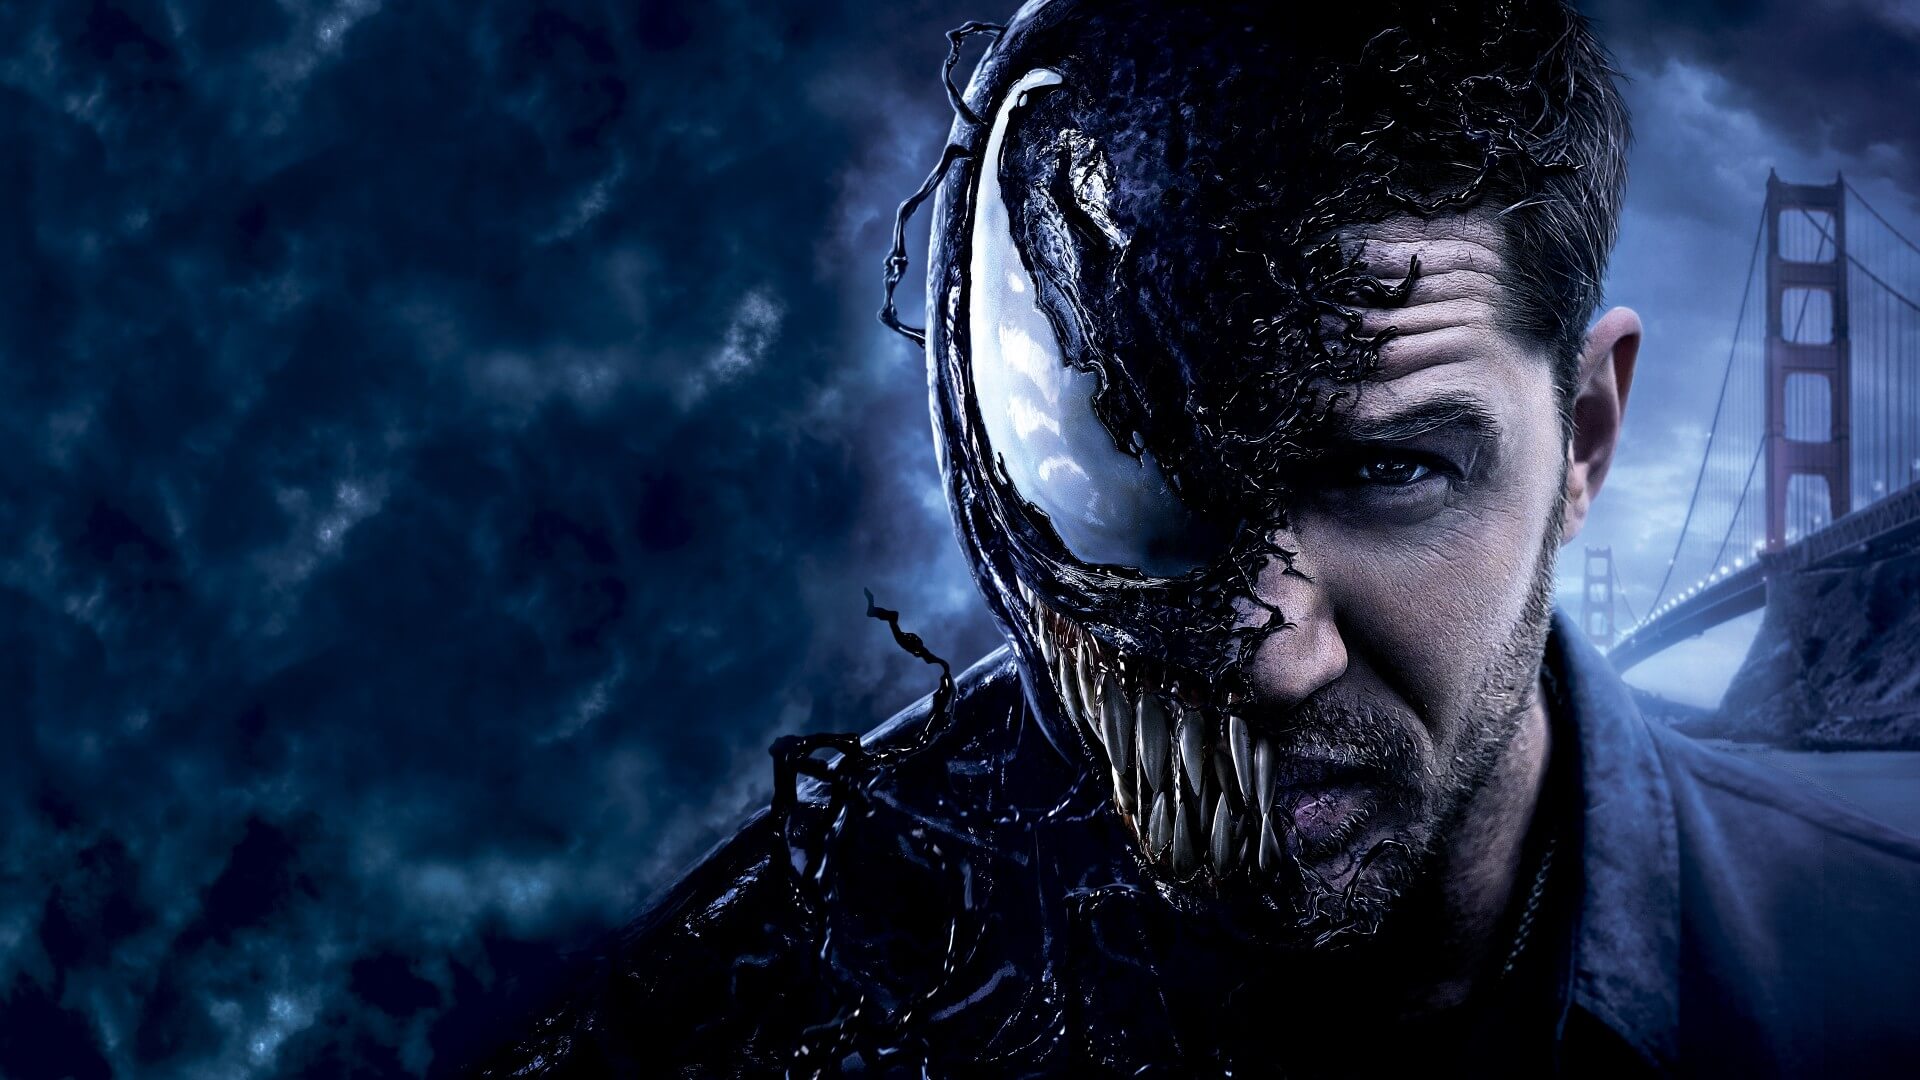 O produtor de Venom da Sony afirmou que tem grandes planos para Homem Aranha no Universo CInematografico da Marvel. O que isso pode significar?